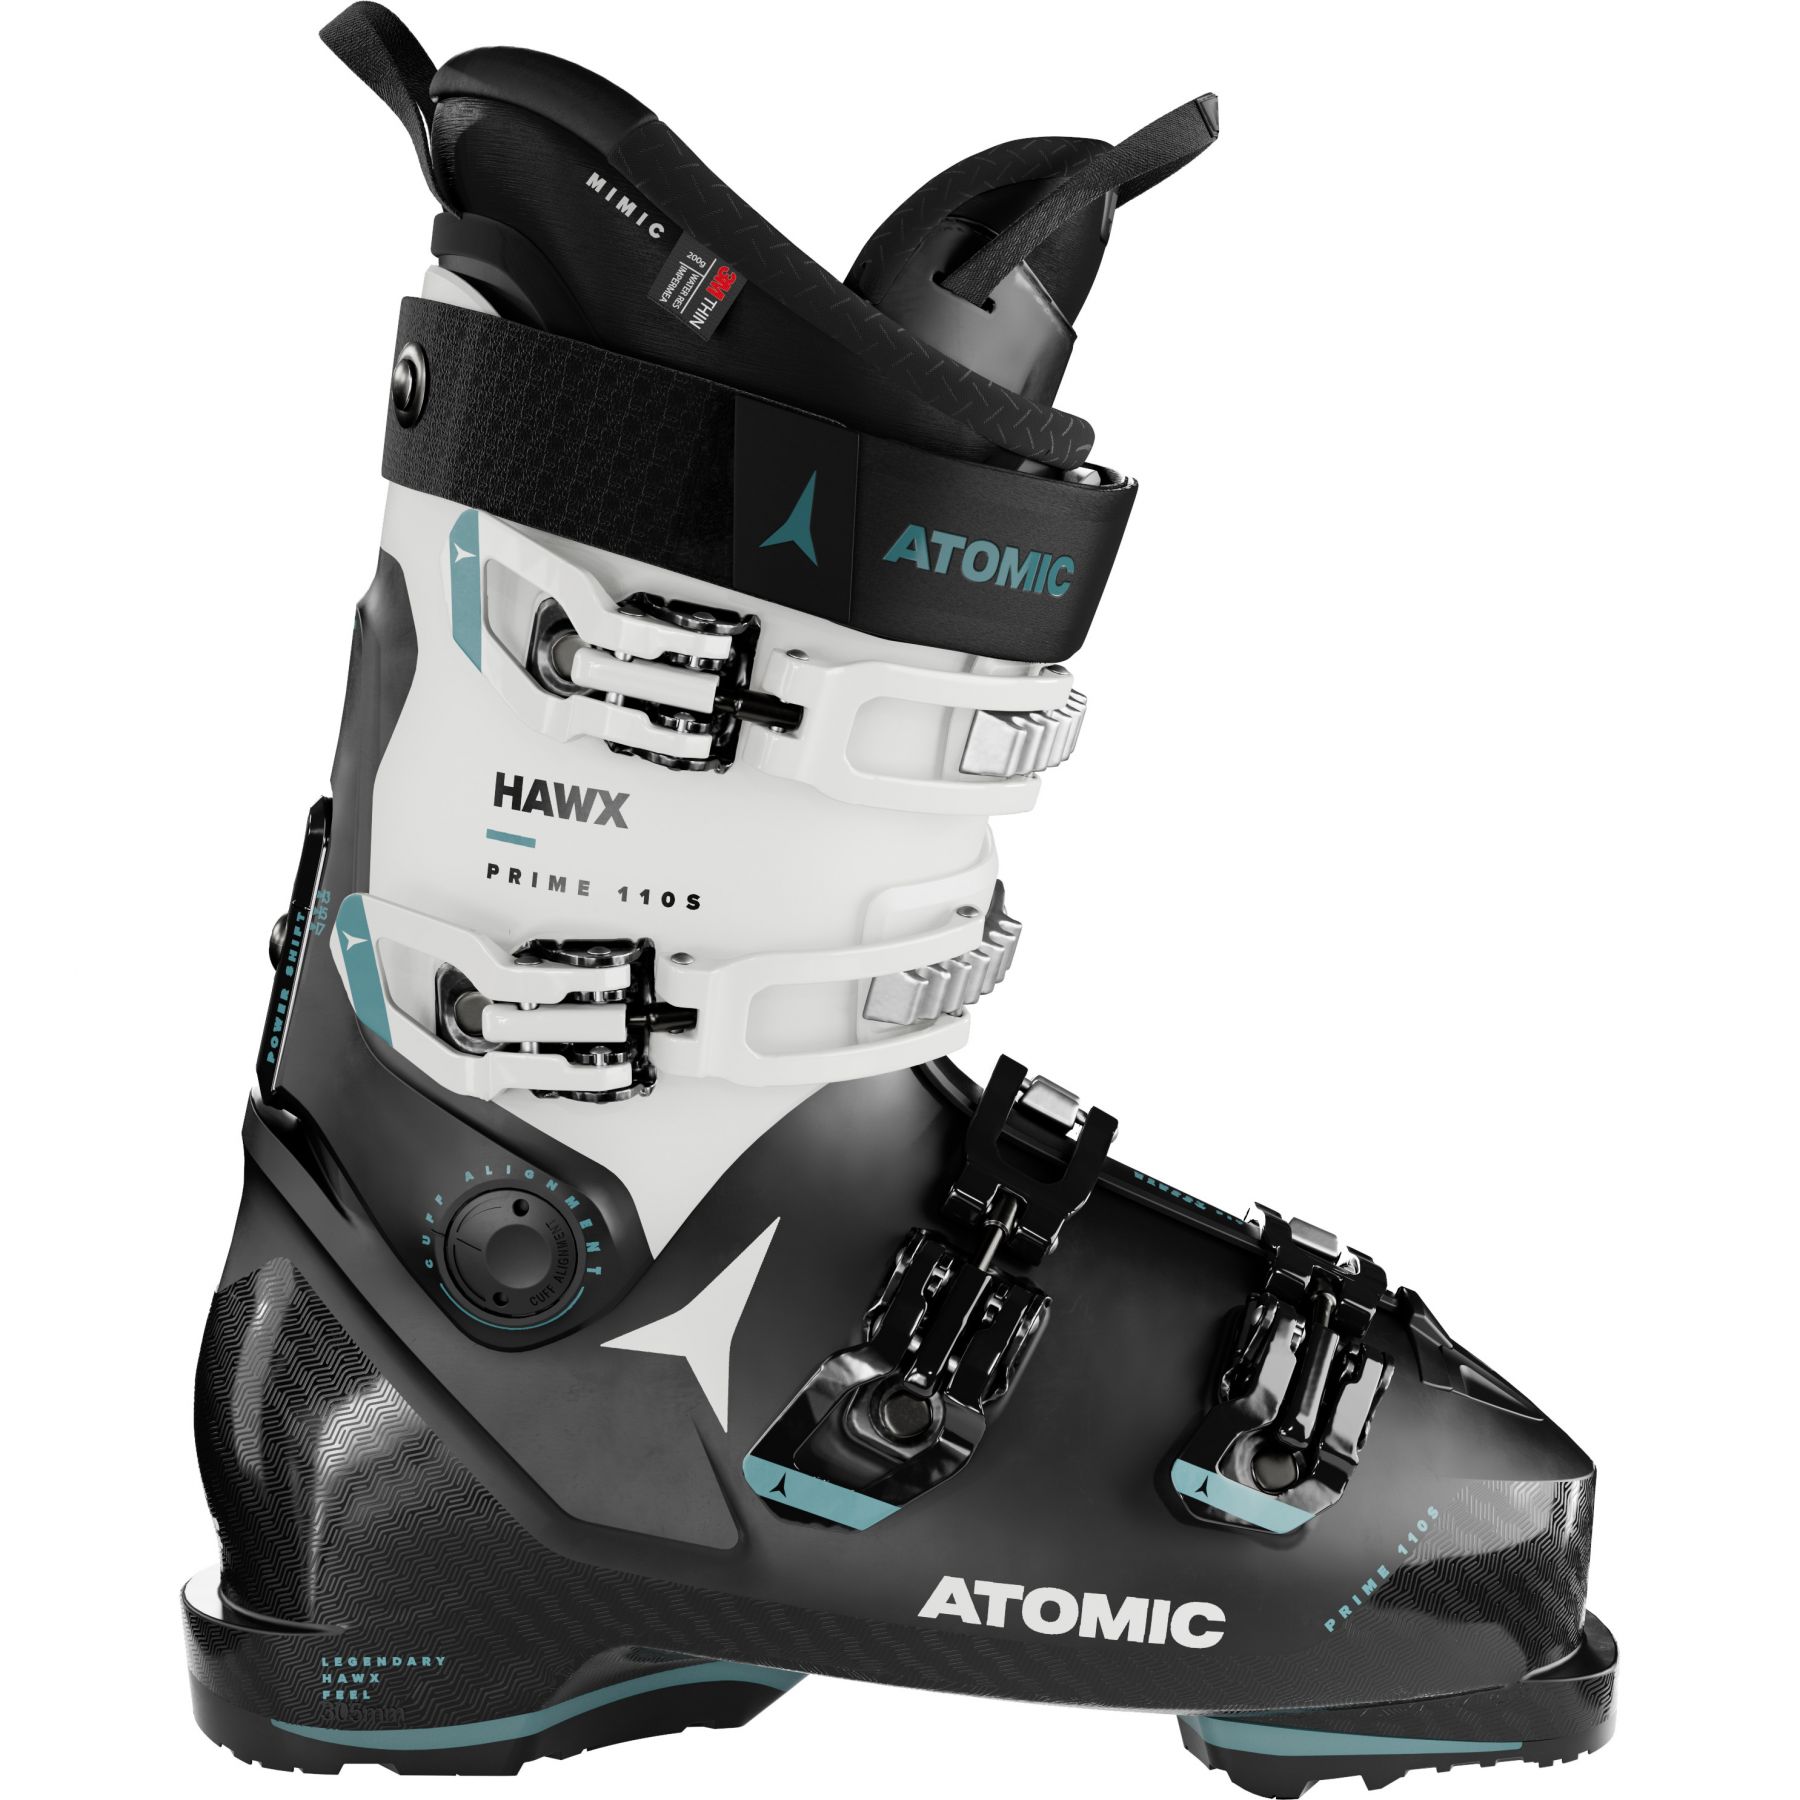 Billede af Atomic Hawx Prime 110 S GW, skistøvler, herre, sort/hvid hos Skisport.dk